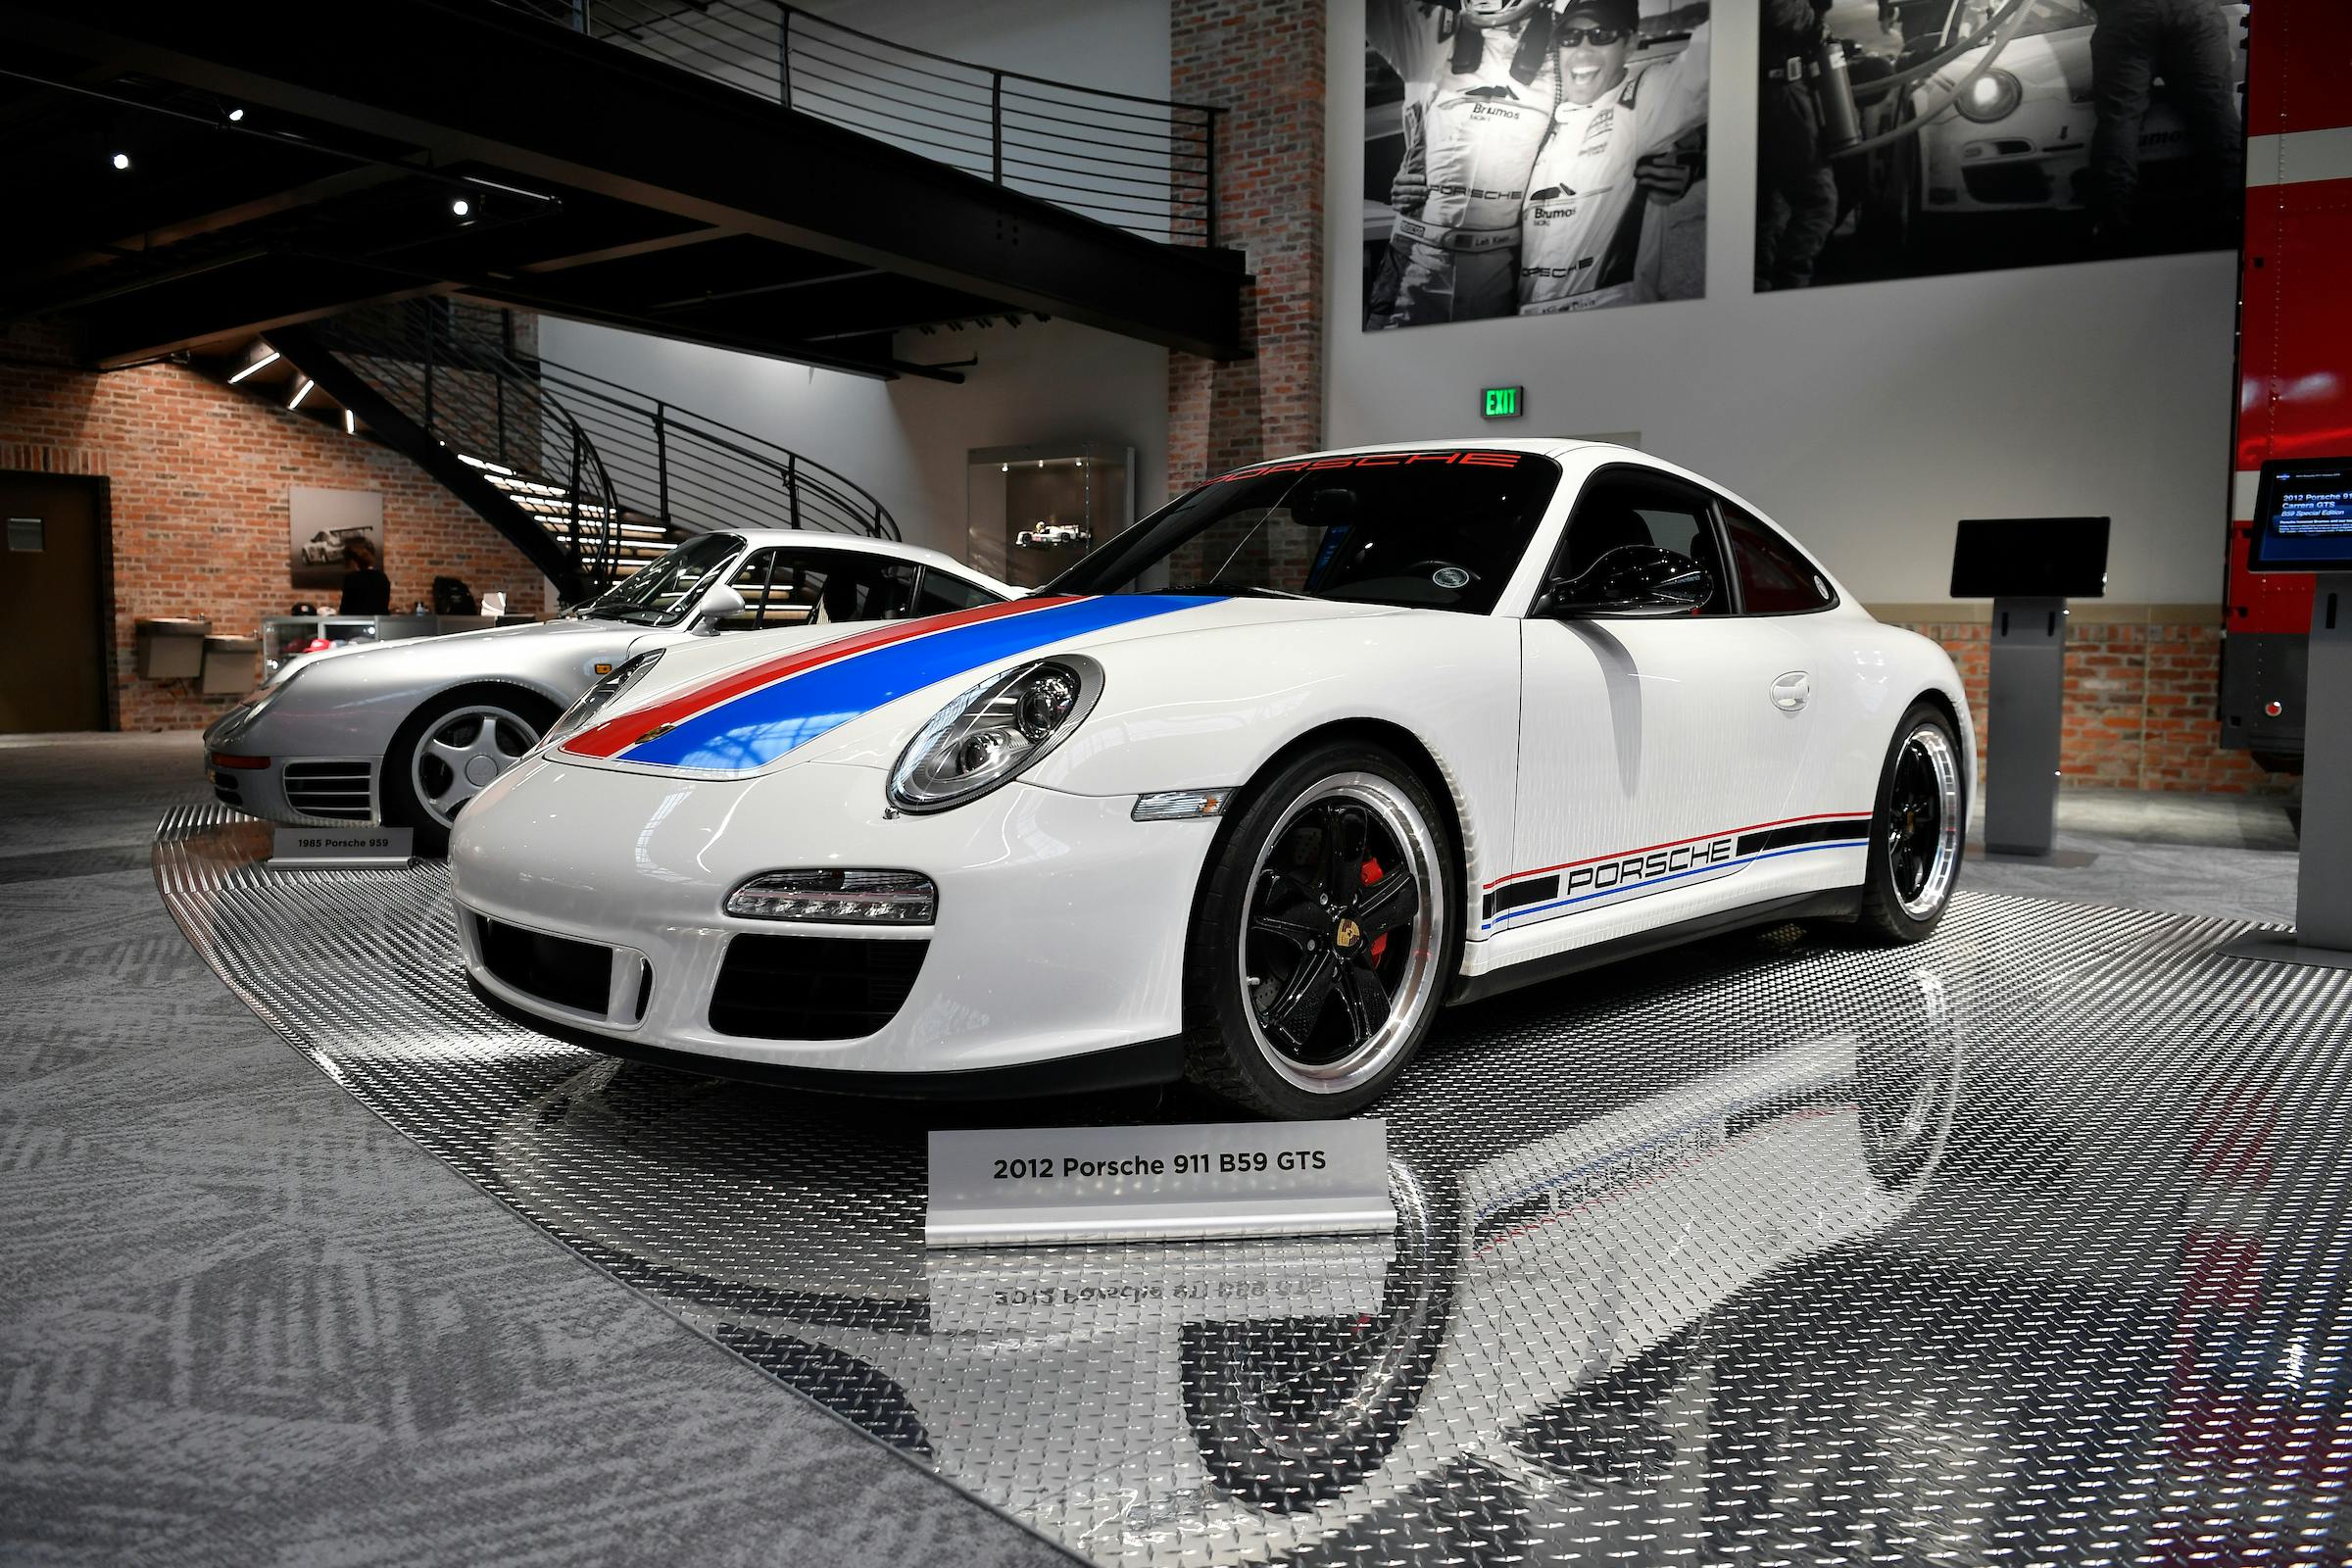 Brumos Collection 2012 Porsche 911 B59 GTS